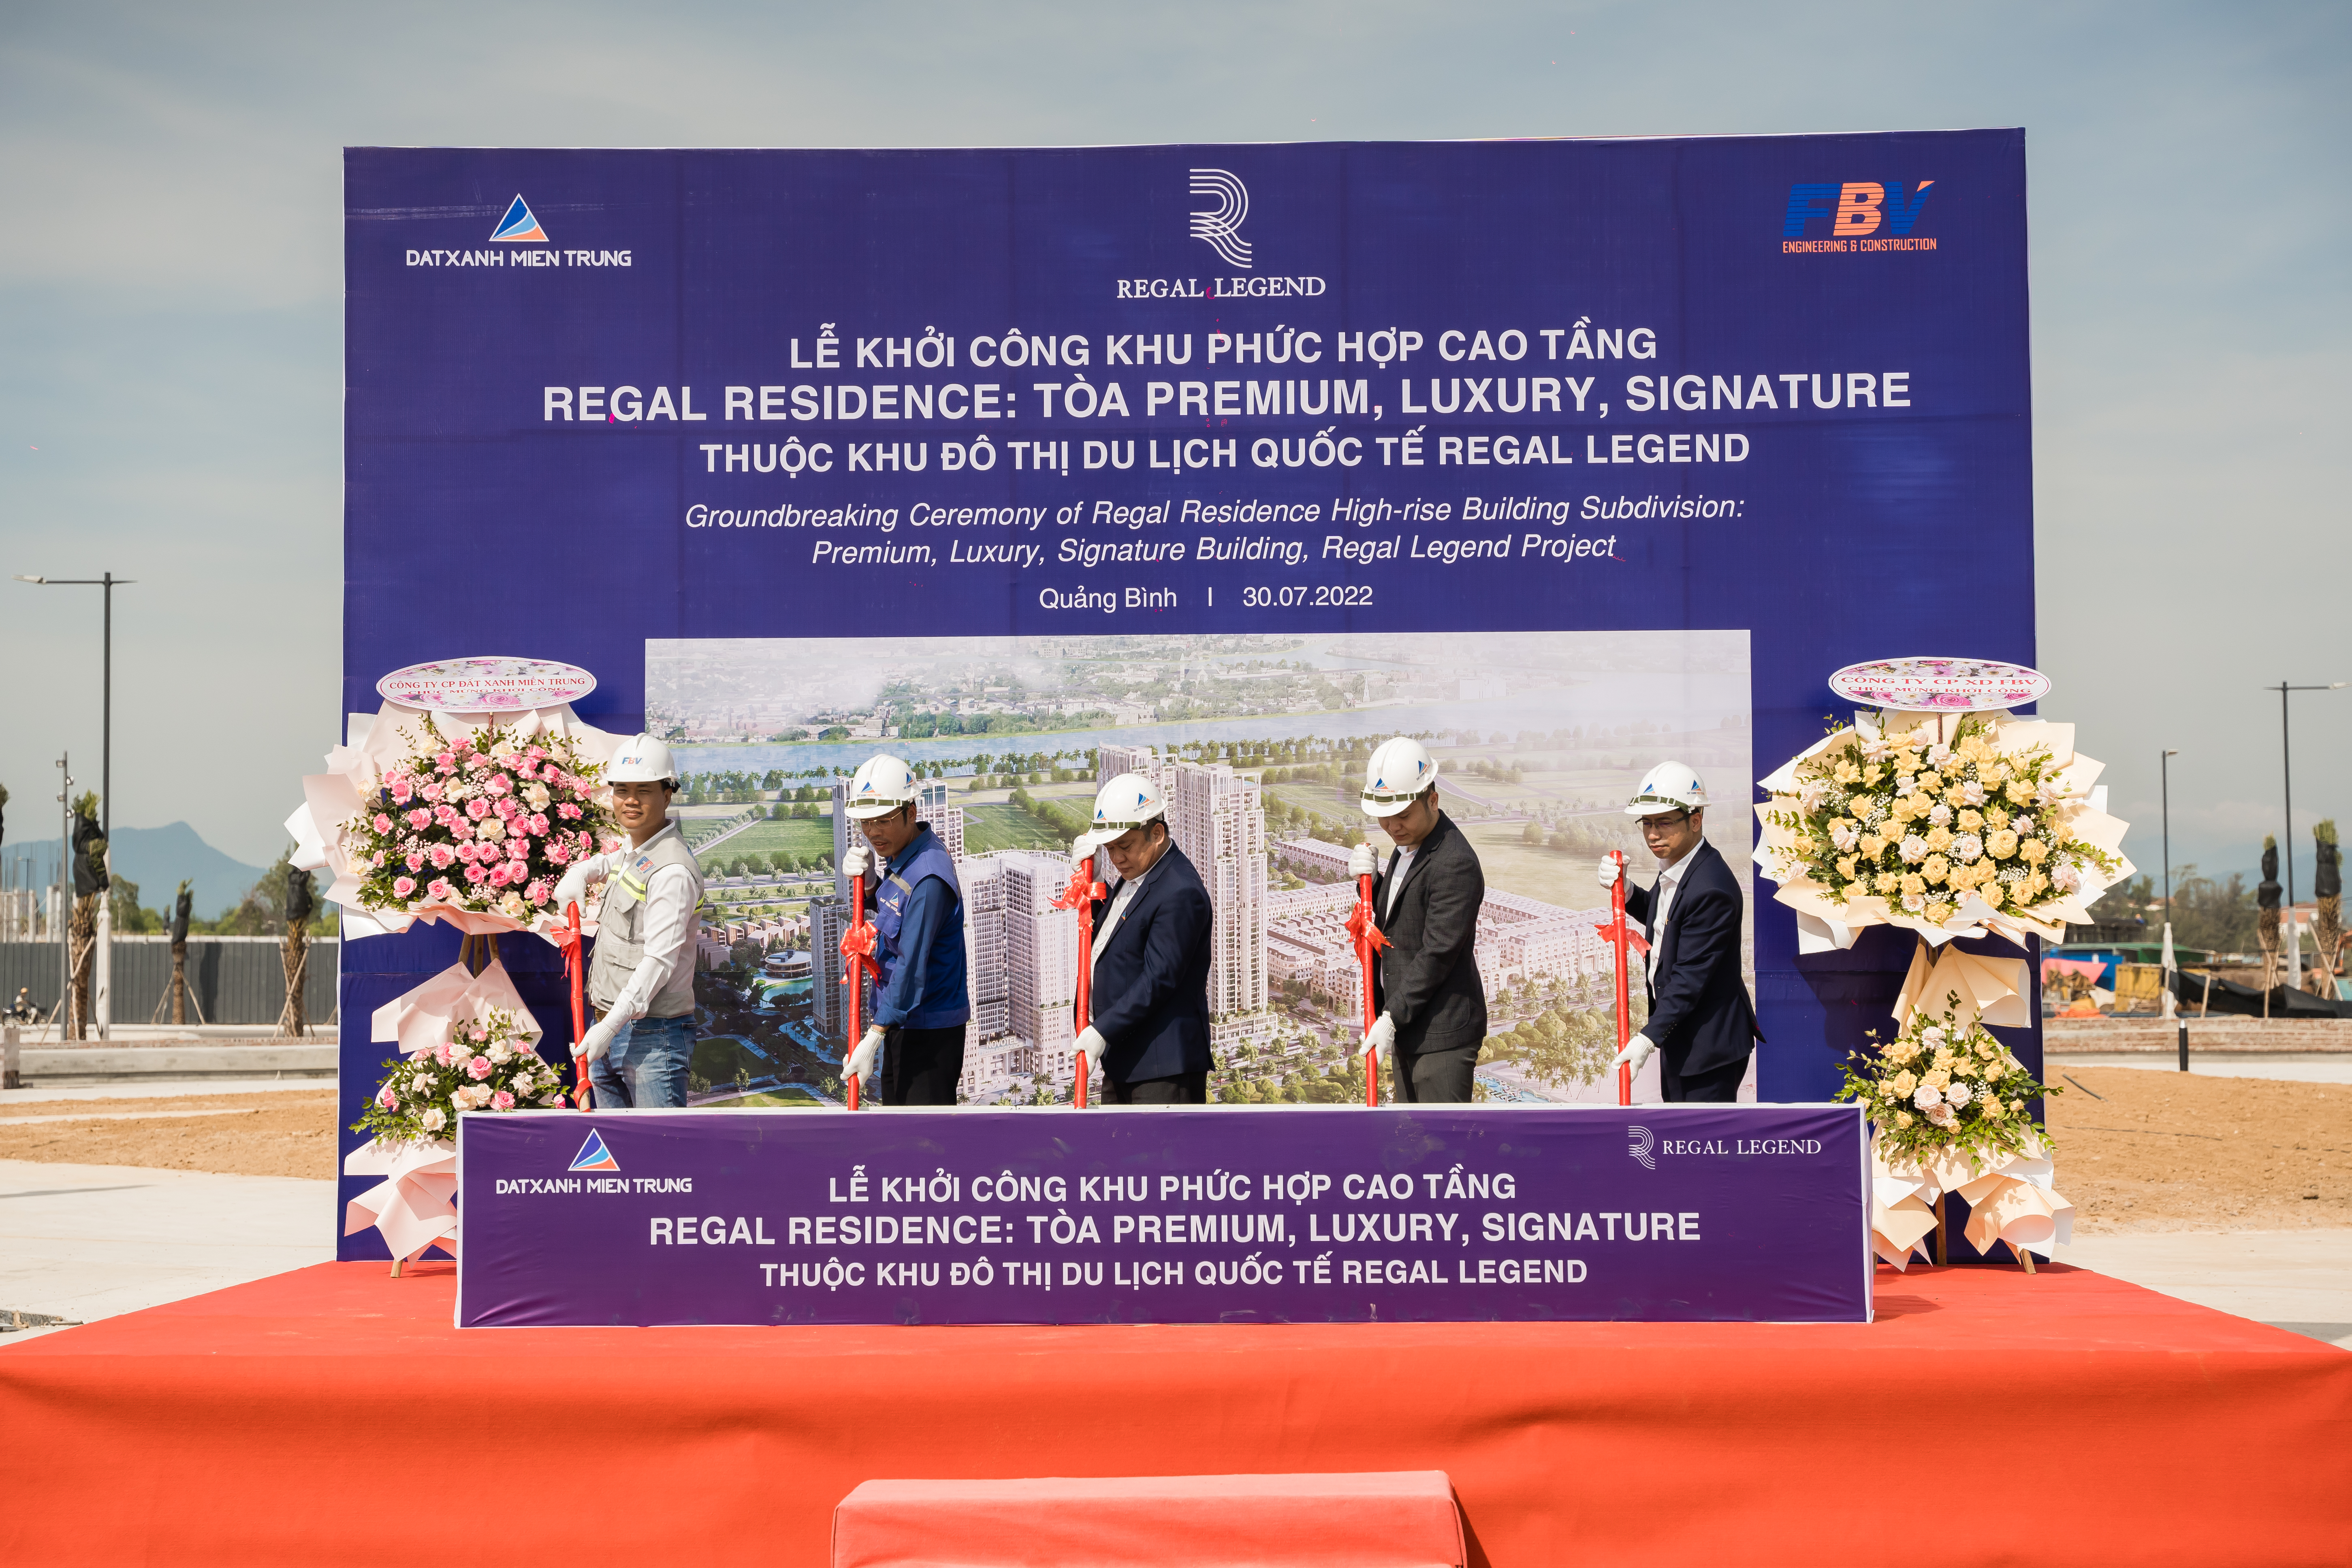 Lễ khởi công khu phức hợp cao tầng Regal Residence tại khu đô thị du lịch quốc tế Regal Legend